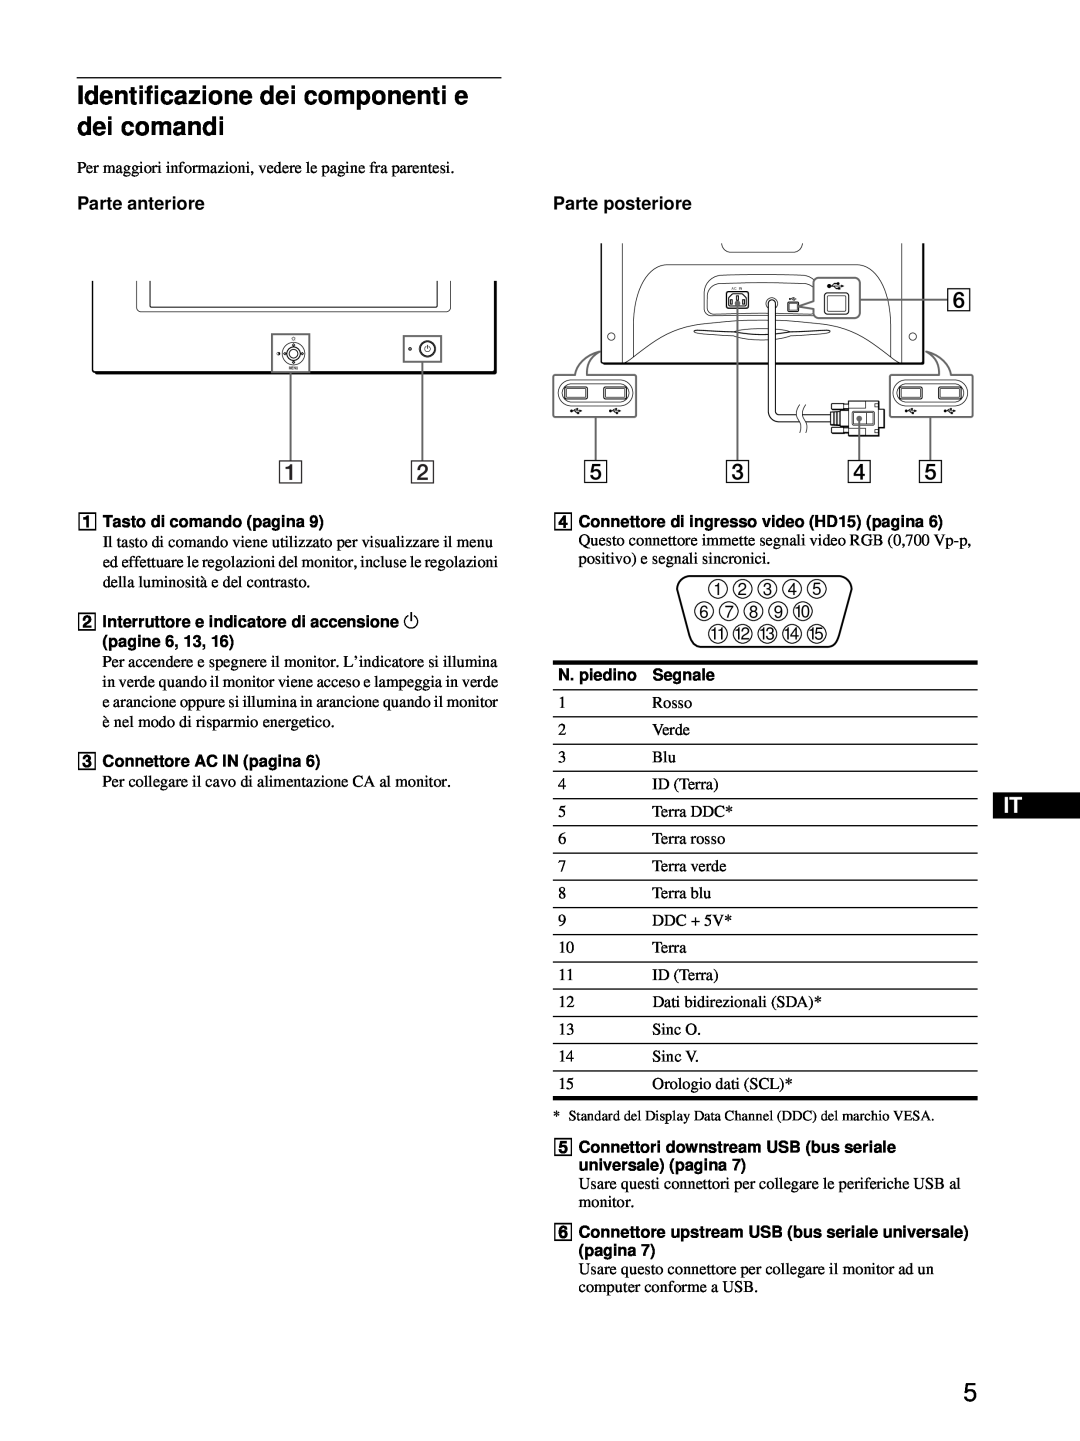 Sony HMD-A220 operating instructions Identificazione dei componenti e dei comandi, Parte anteriore, Parte posteriore 